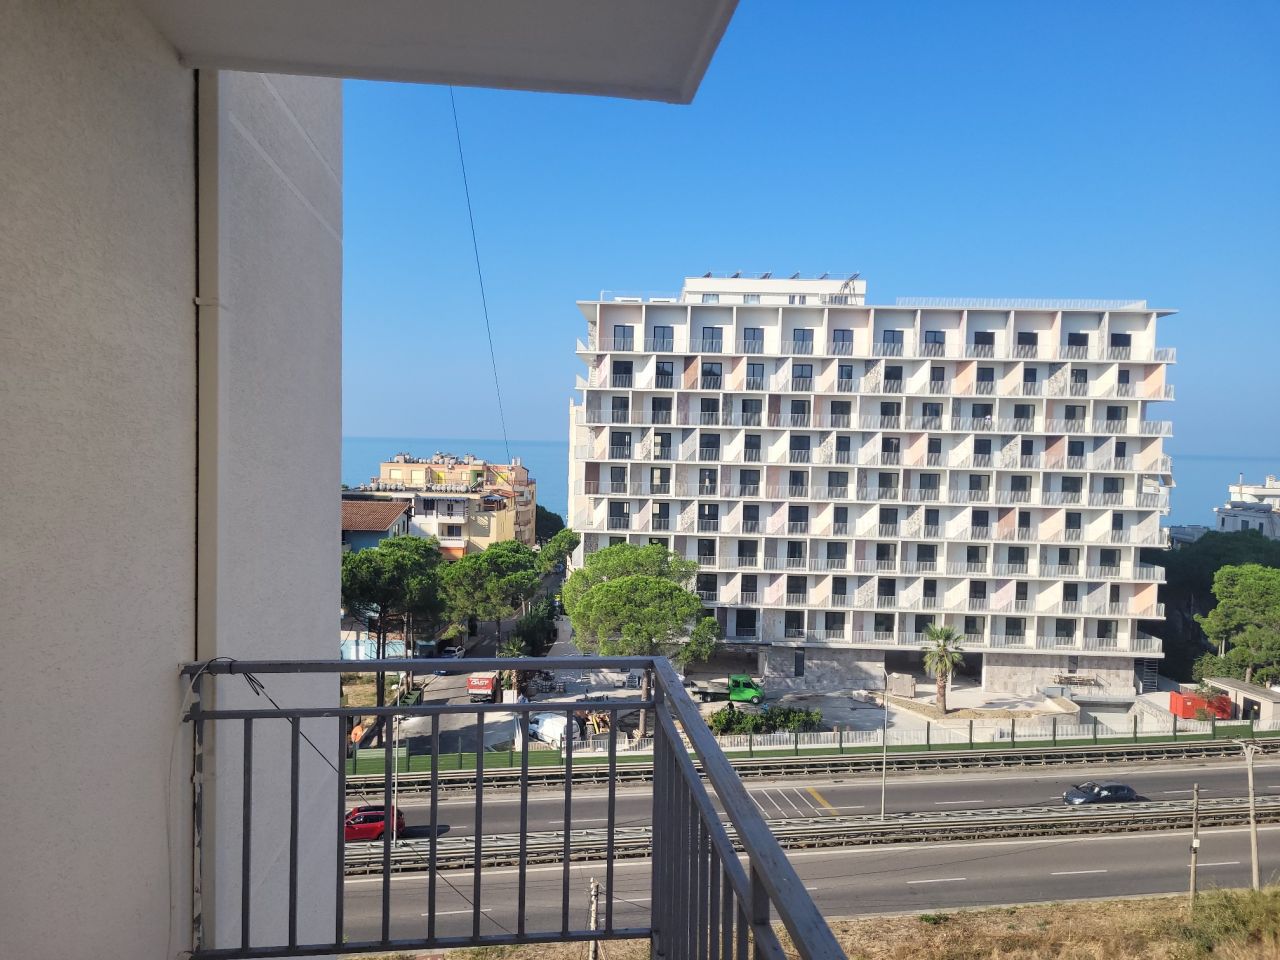 Wohnung Zum Verkauf In Durres, Albanien, In Einer Ruhigen Gegend, Nahe Dem Strand Gelegen